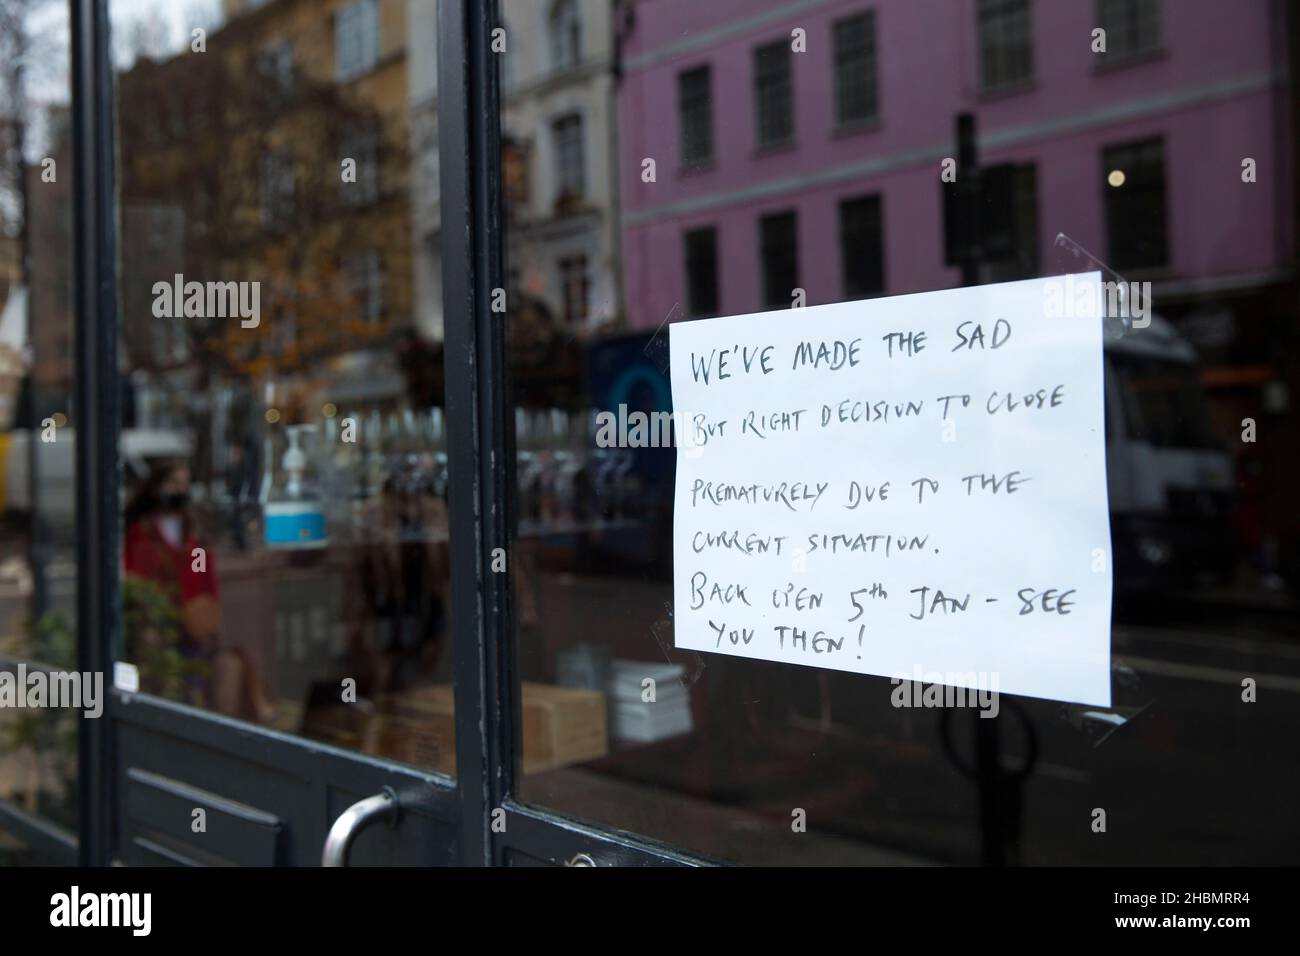 Un avviso che informa i clienti della decisione di chiudere prematuramente viene visualizzato sulla vetrina di un'unità/ristorante al dettaglio a Londra. Foto Stock